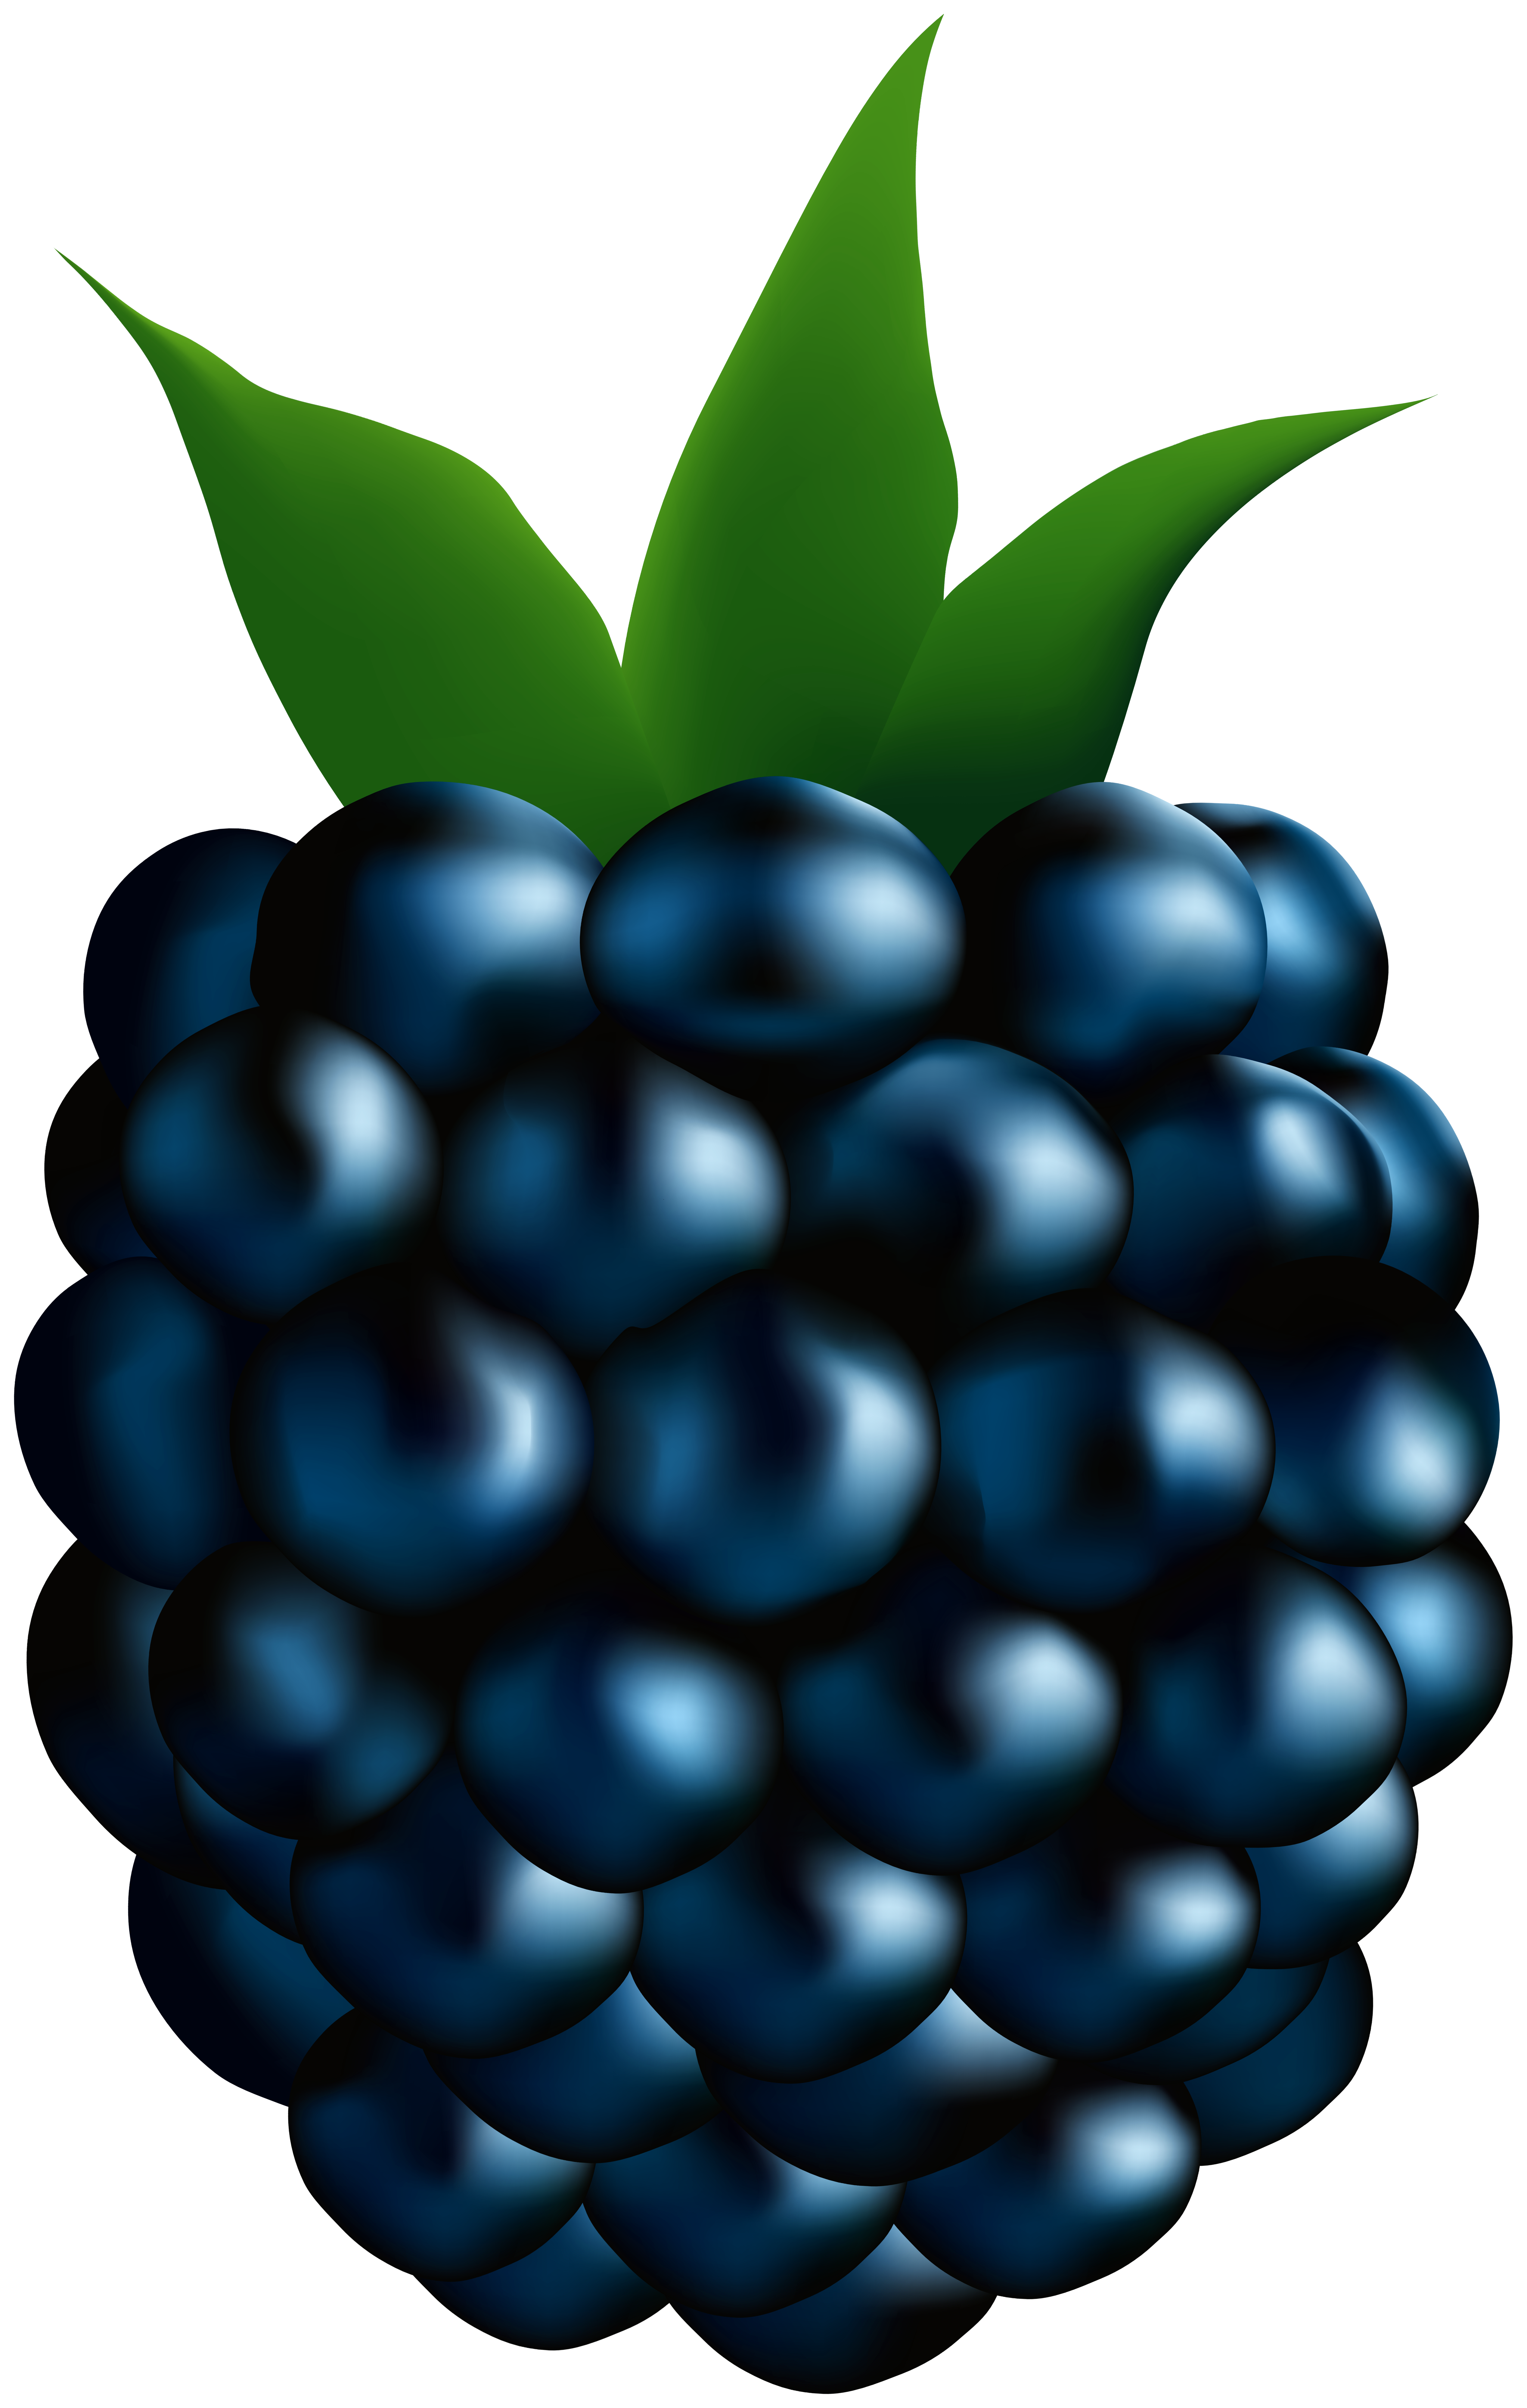 blackberries clip art